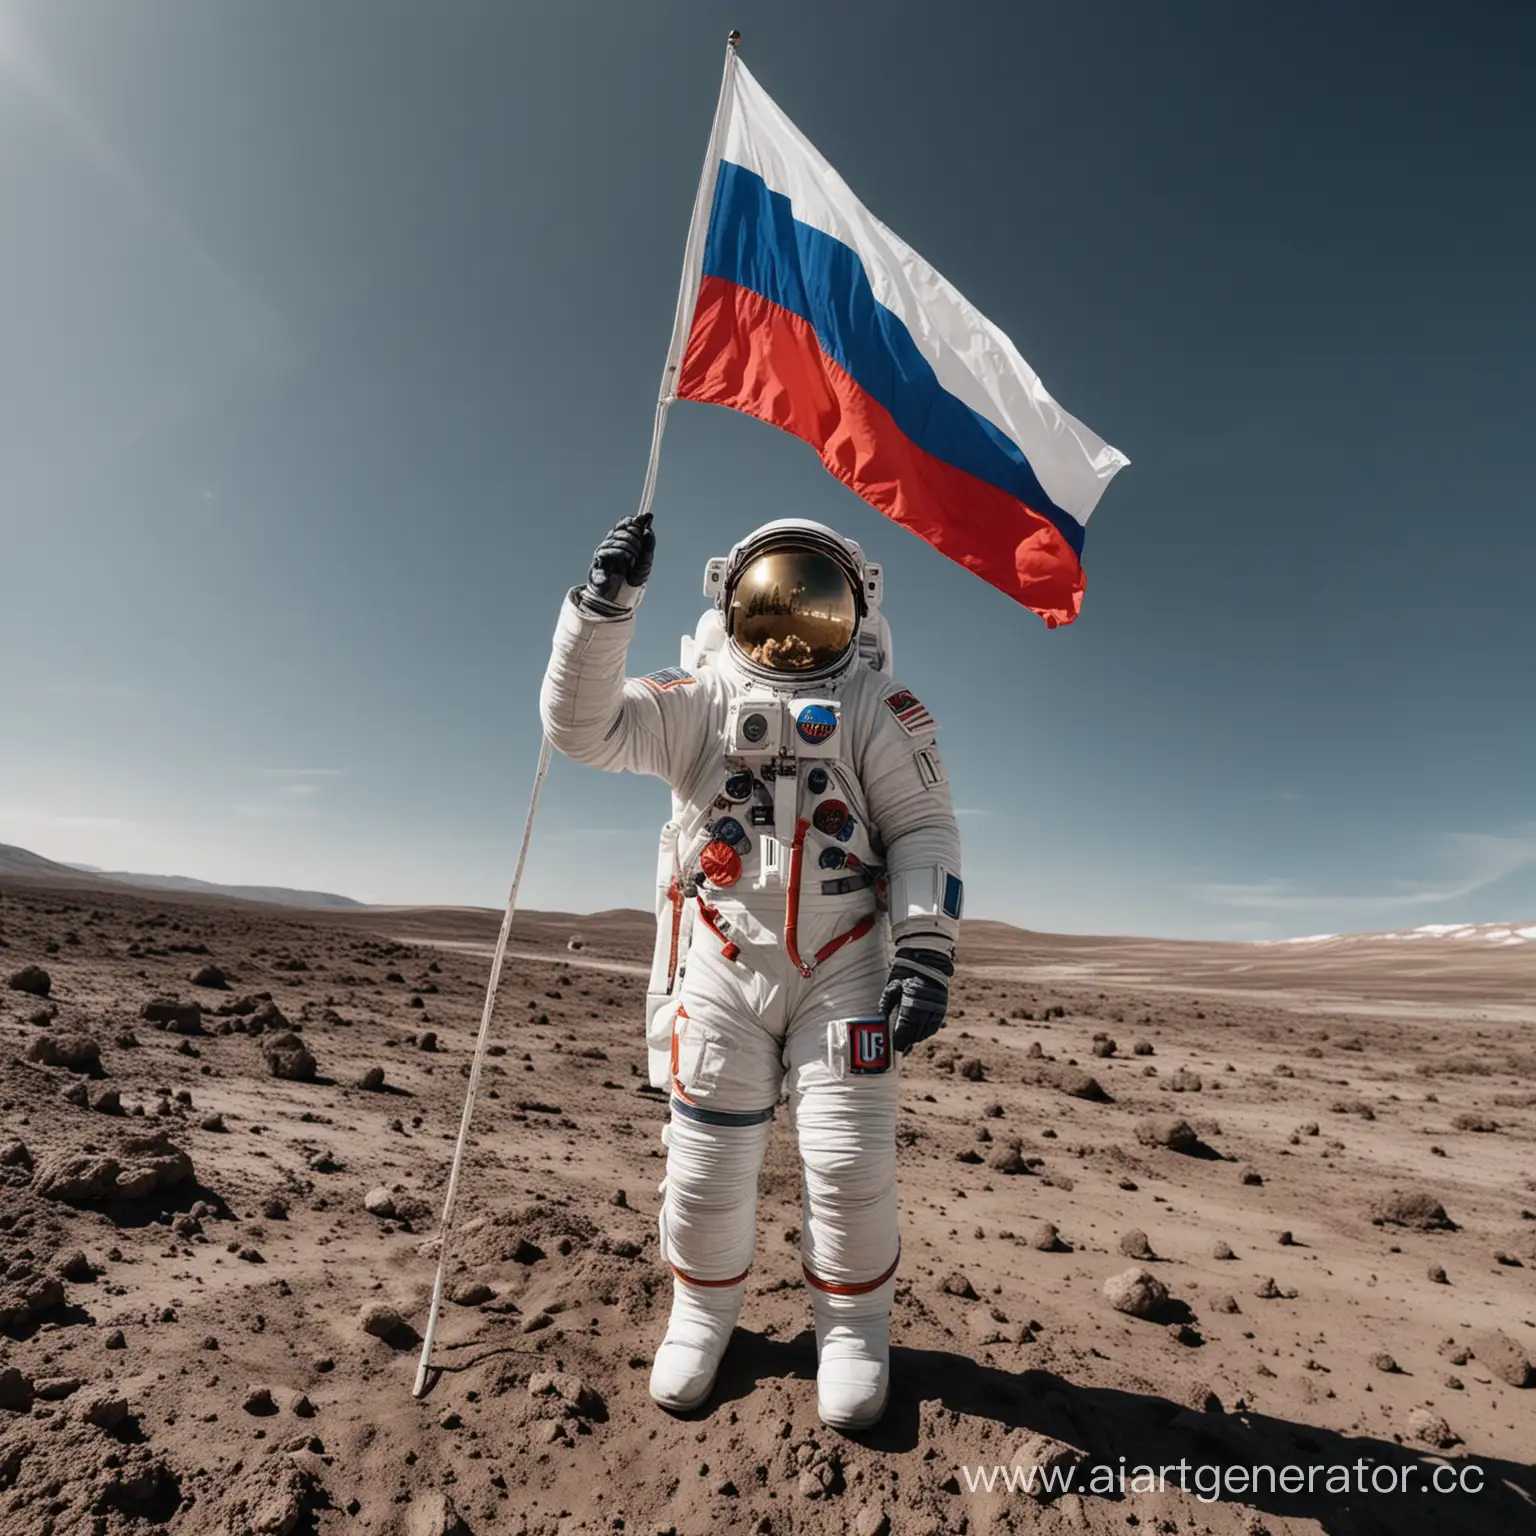 покажи в открытом космосе российского космонавта в скафандре с нашивкой российского флага, который машет нам руками